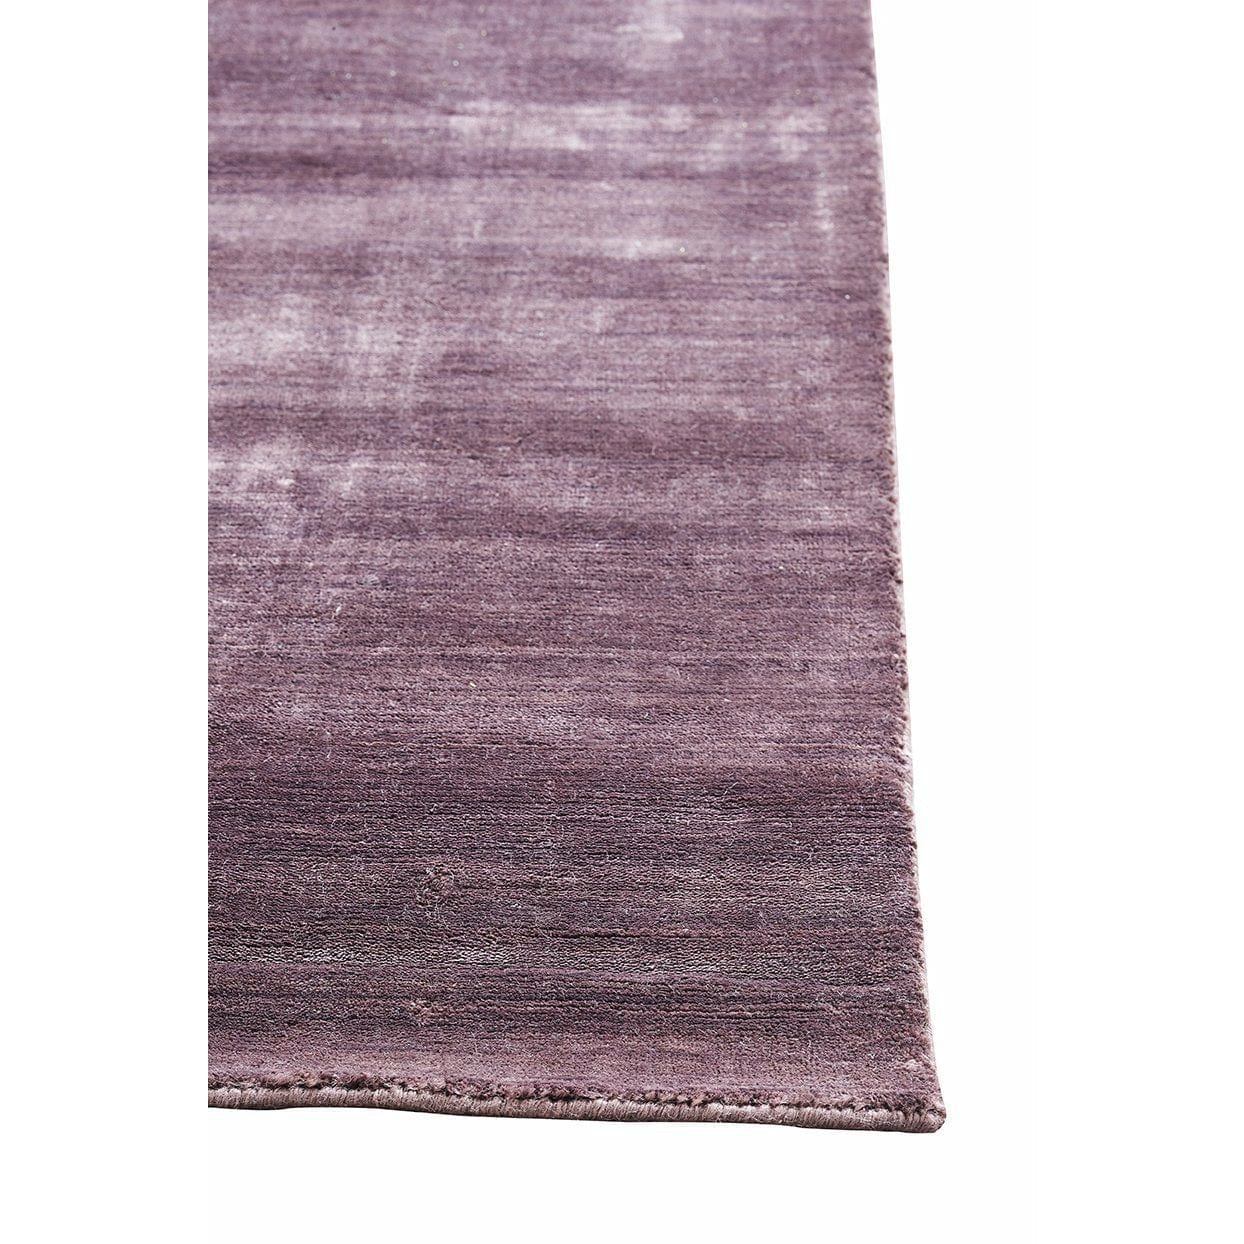 Massimo Bambus tæppe blomme, 170x240 cm